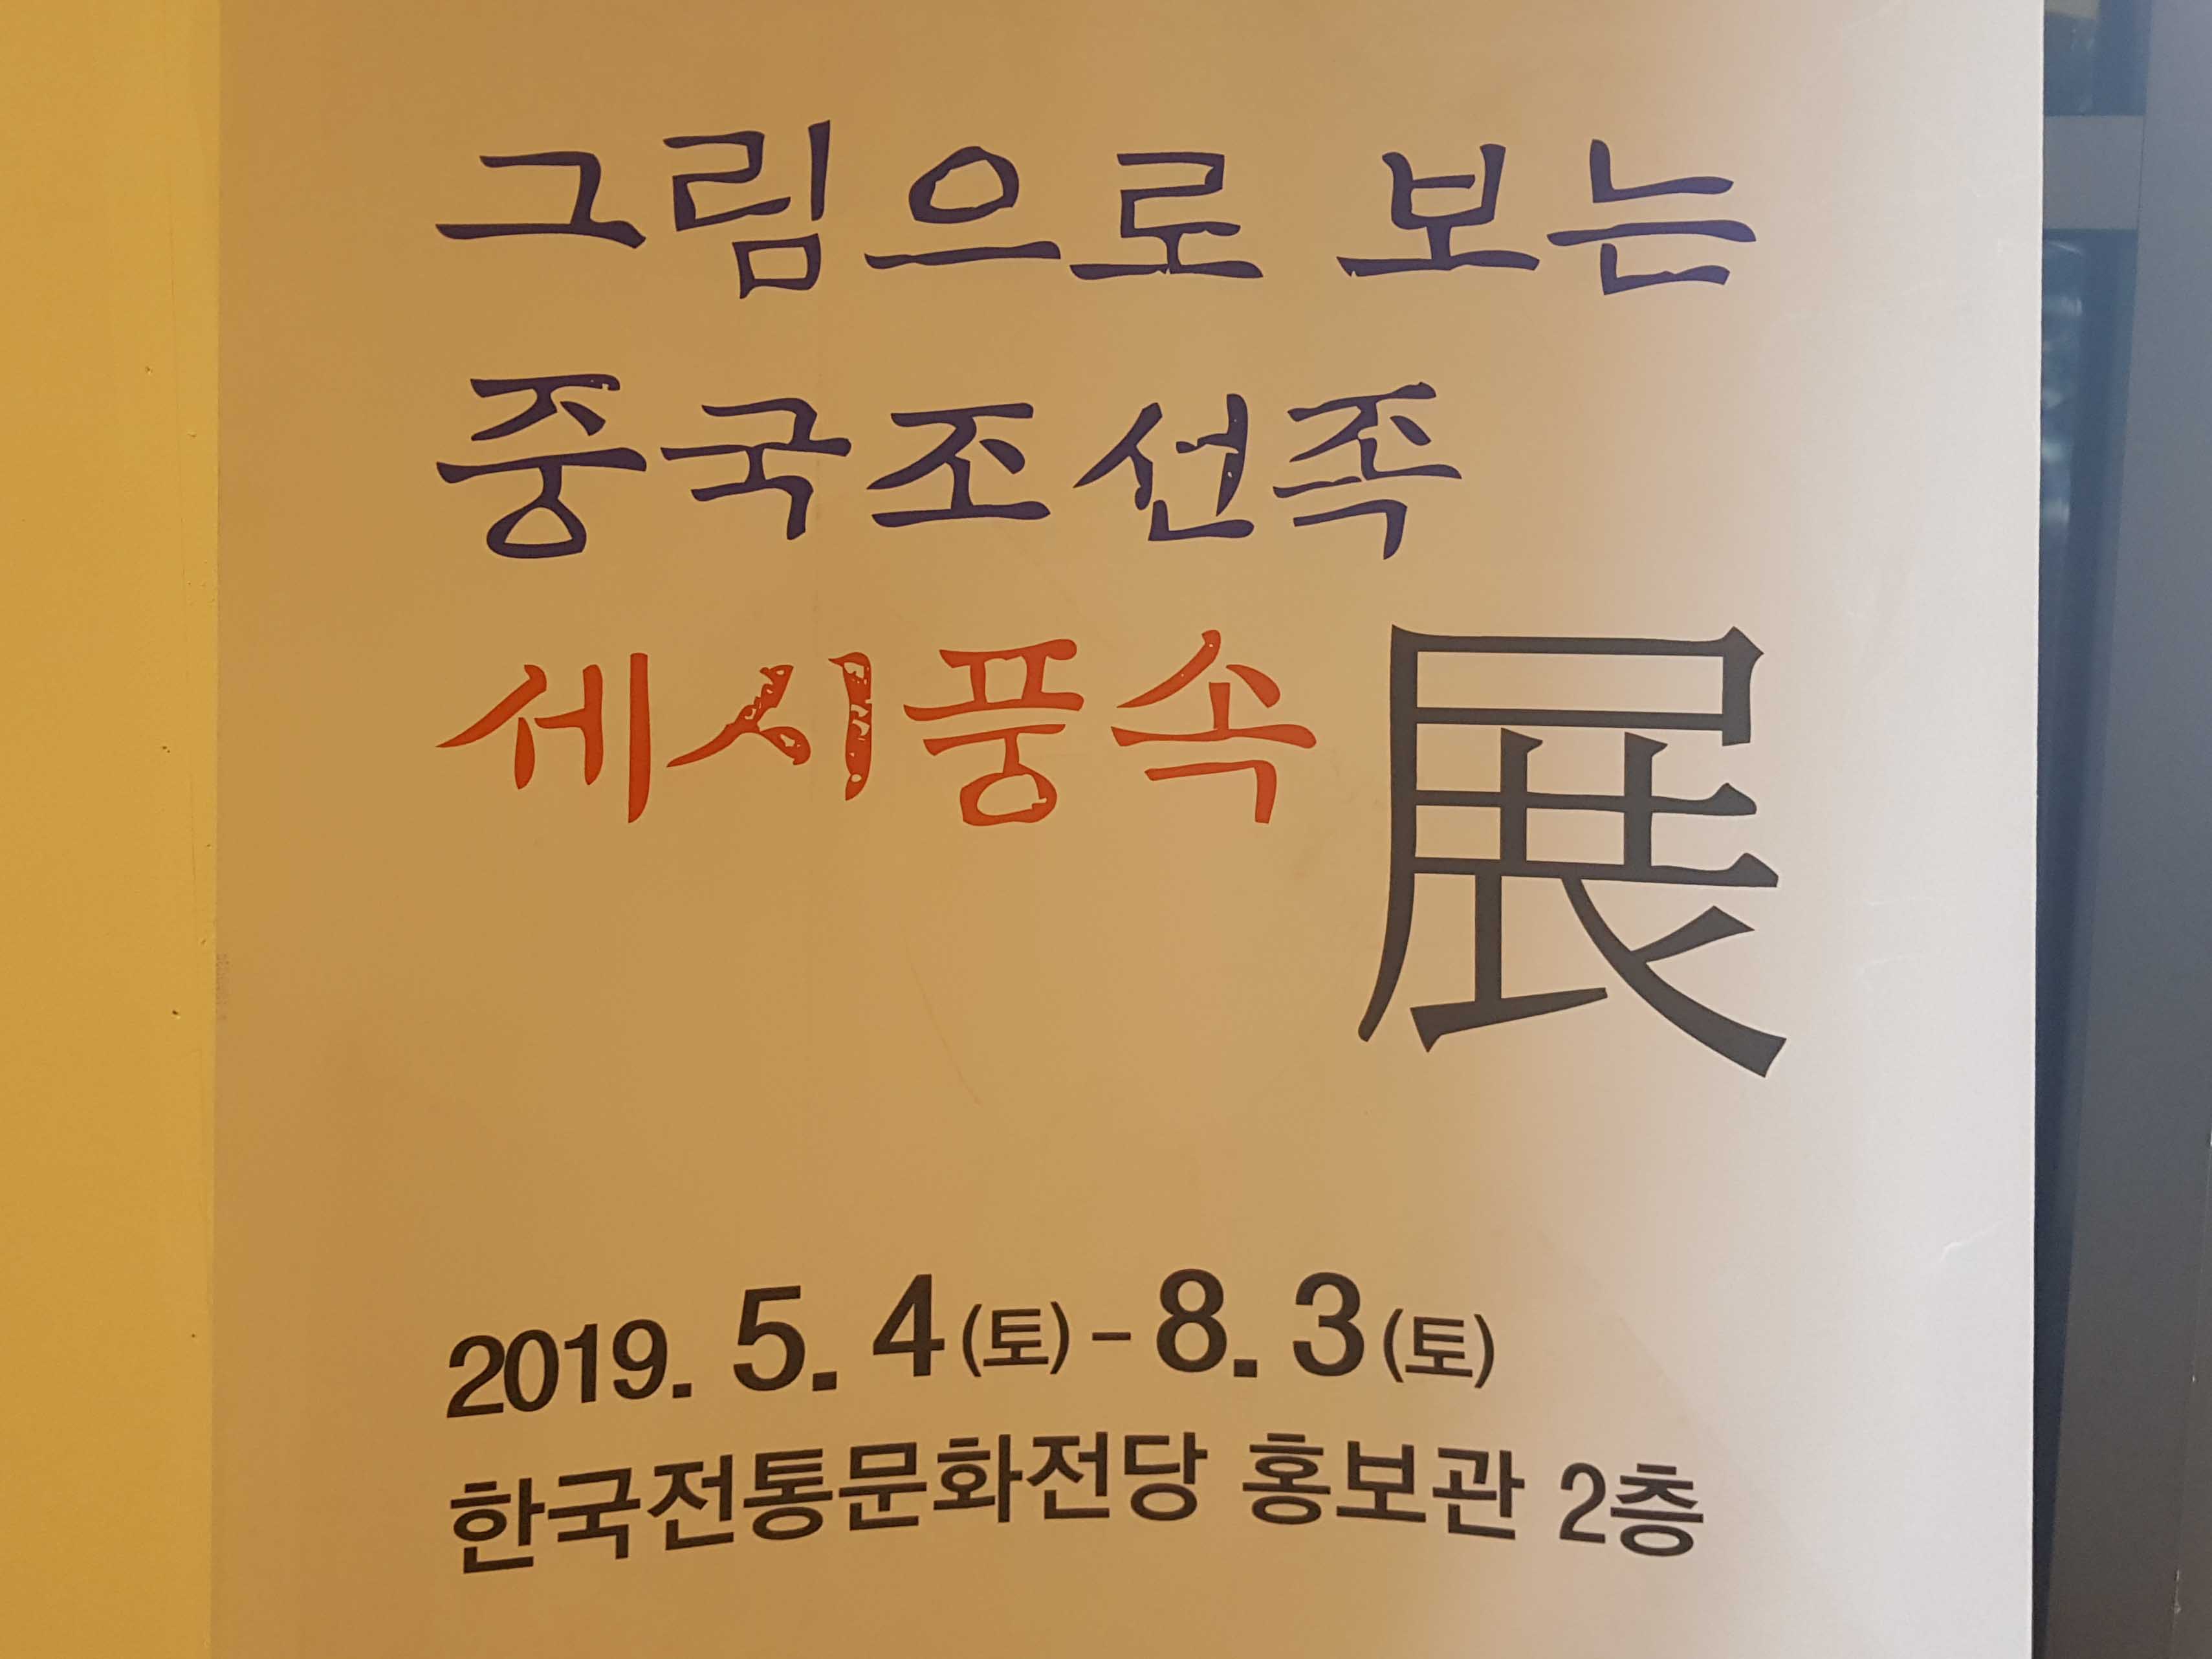 그림으로 보는 중국 조선족 세시풍속전 2019.5.4~8.3 한국전통문화전당 홍보관 2층 